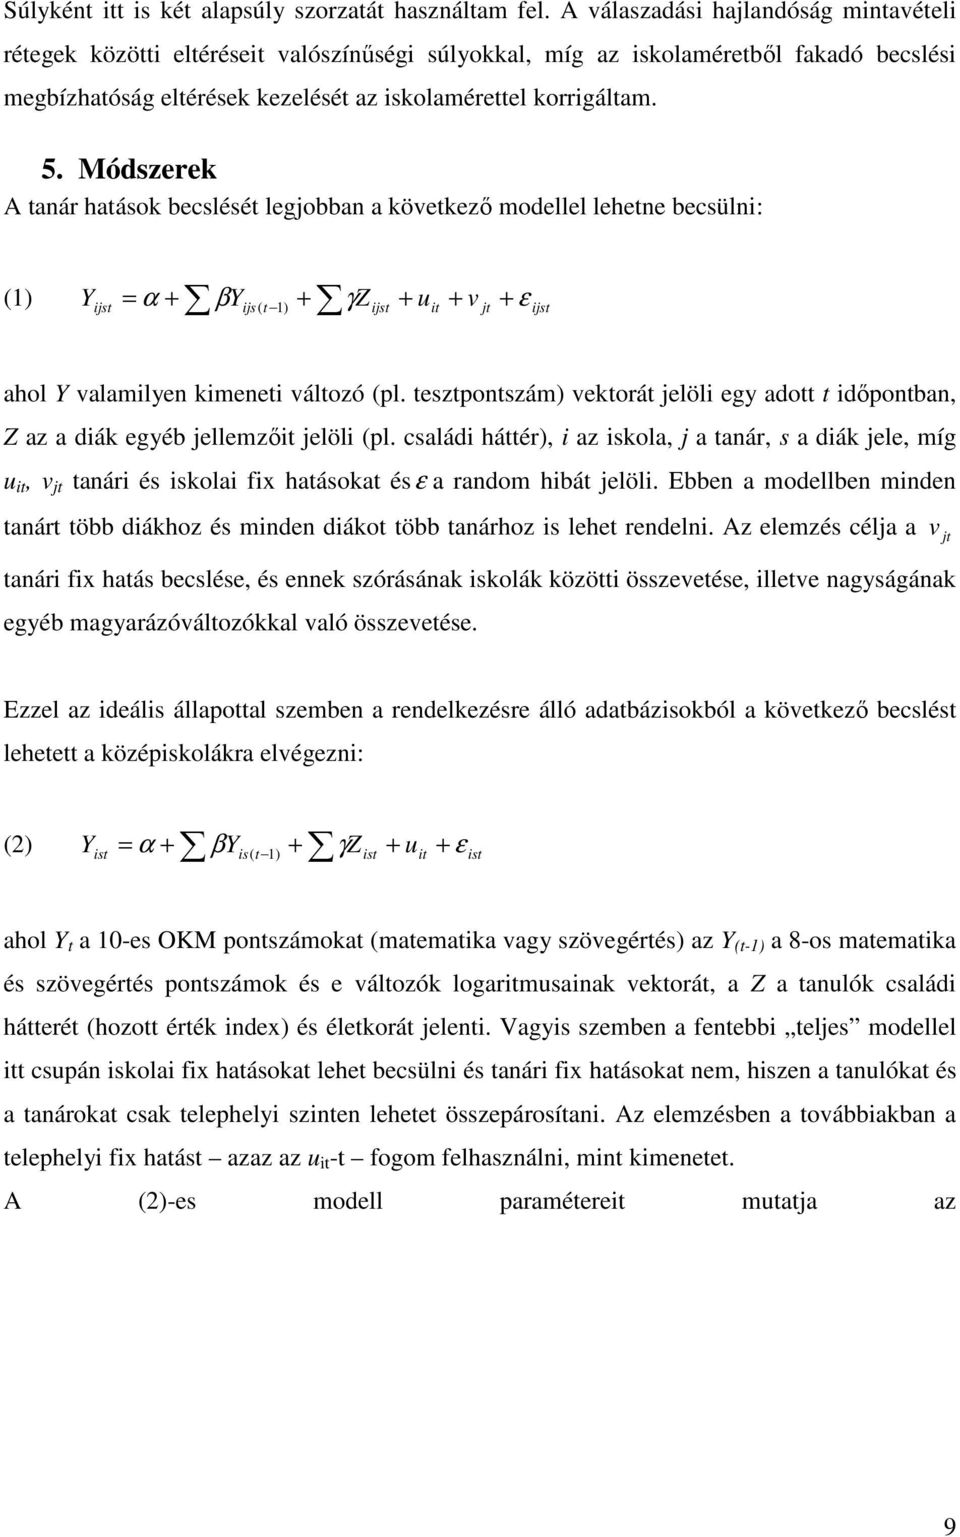 Módszerek A tanár hatások becslését legjobban a következı modellel lehetne becsülni: (1) Yijst = α + βyijs ( t 1) + γz ijst + uit + v jt + ε ijst ahol Y valamilyen kimeneti változó (pl.